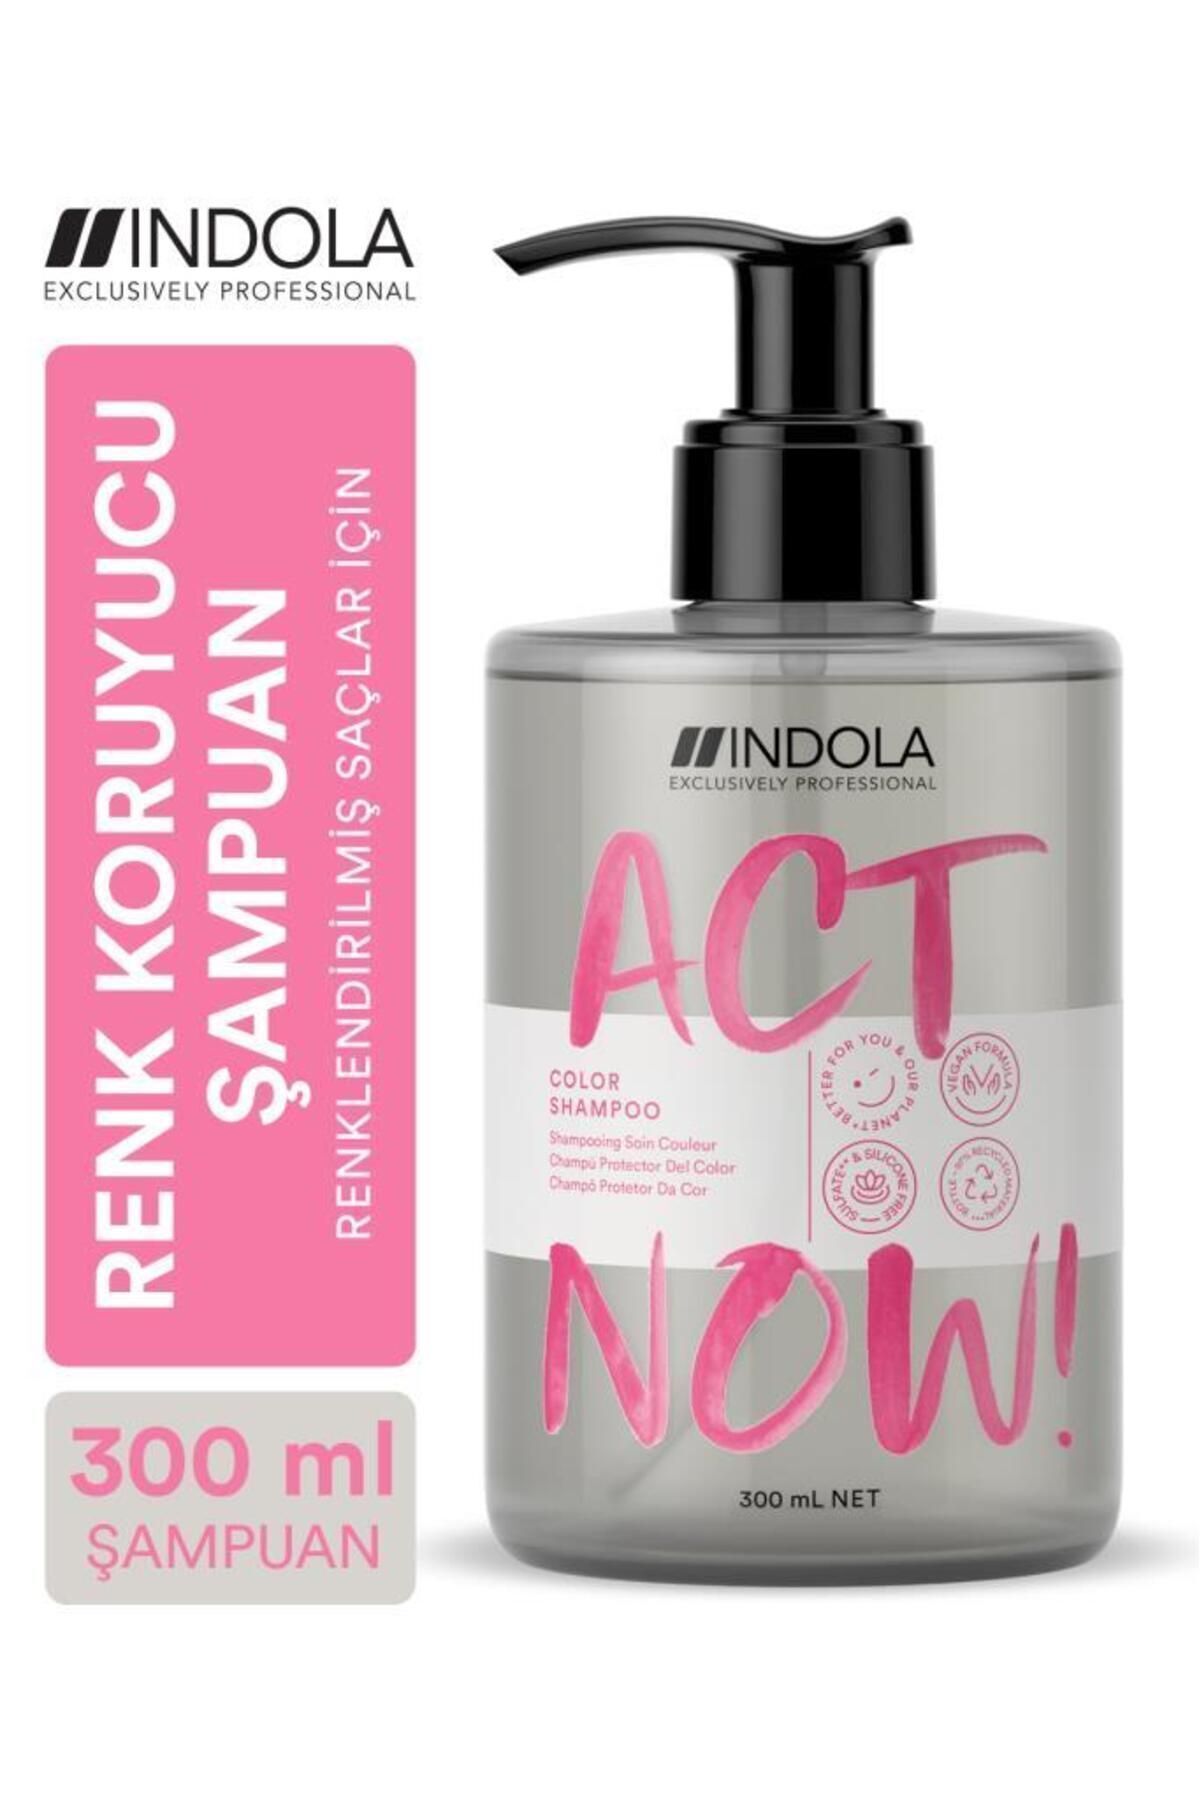 Indola Act Now! Renklendirilmiş Saçlar Için Chia Tohumu Özlü Renk Koruyucu Şampuan 300ml | Vegan, Sülfatsız